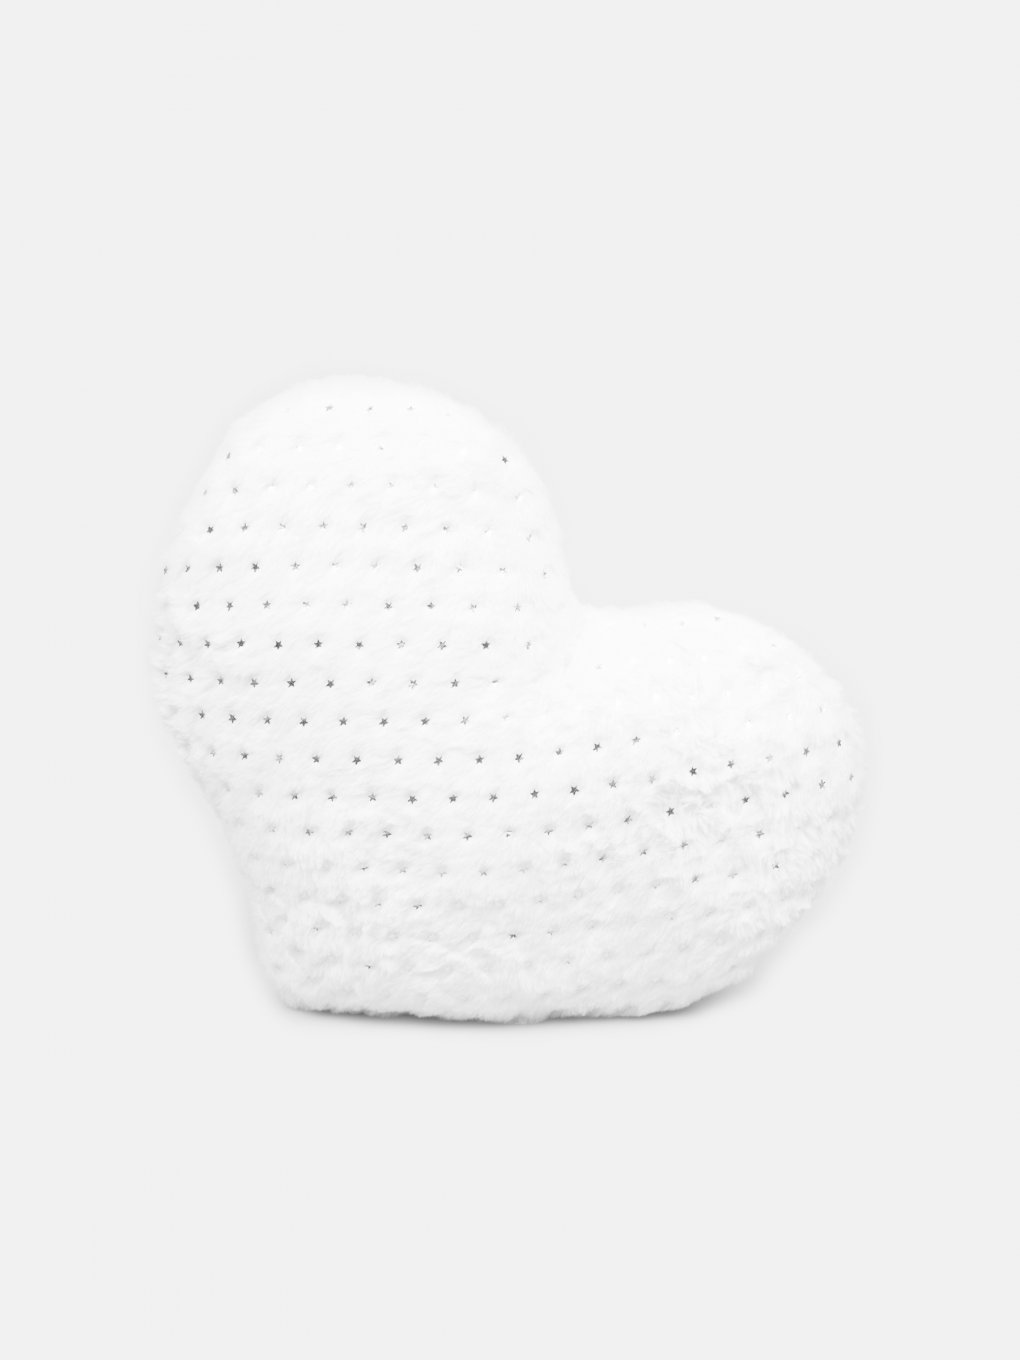 Heart shaped pillow (35 x 40cm)